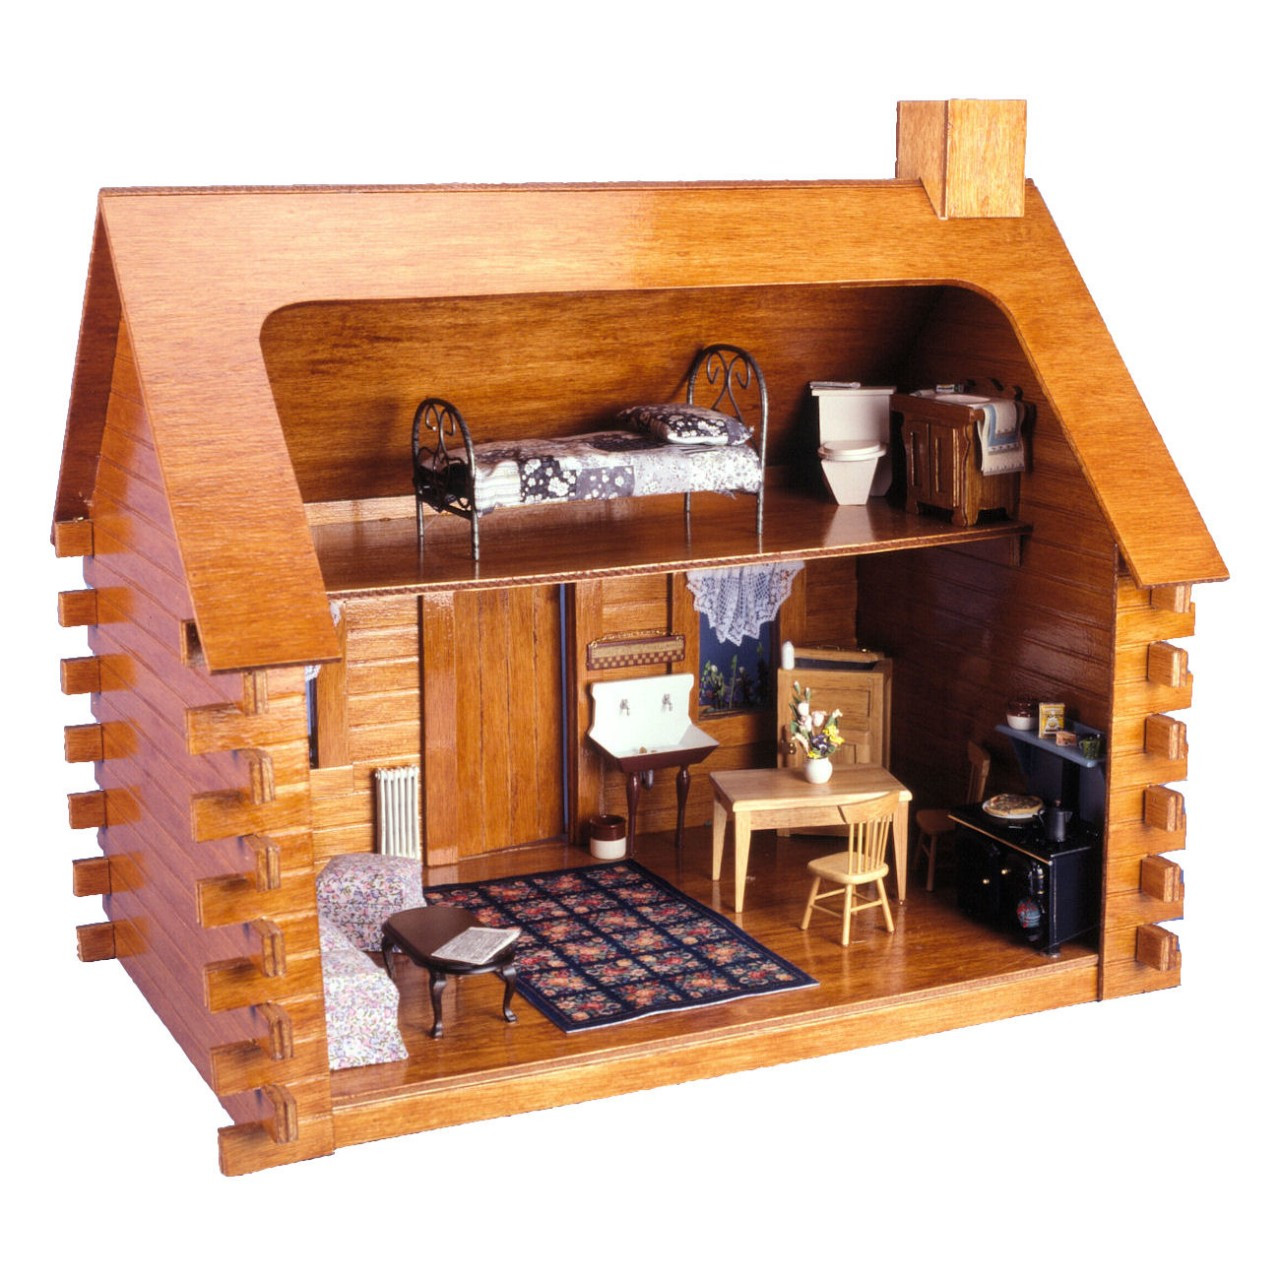 Shadybrook Cabin Dollhouse Kit